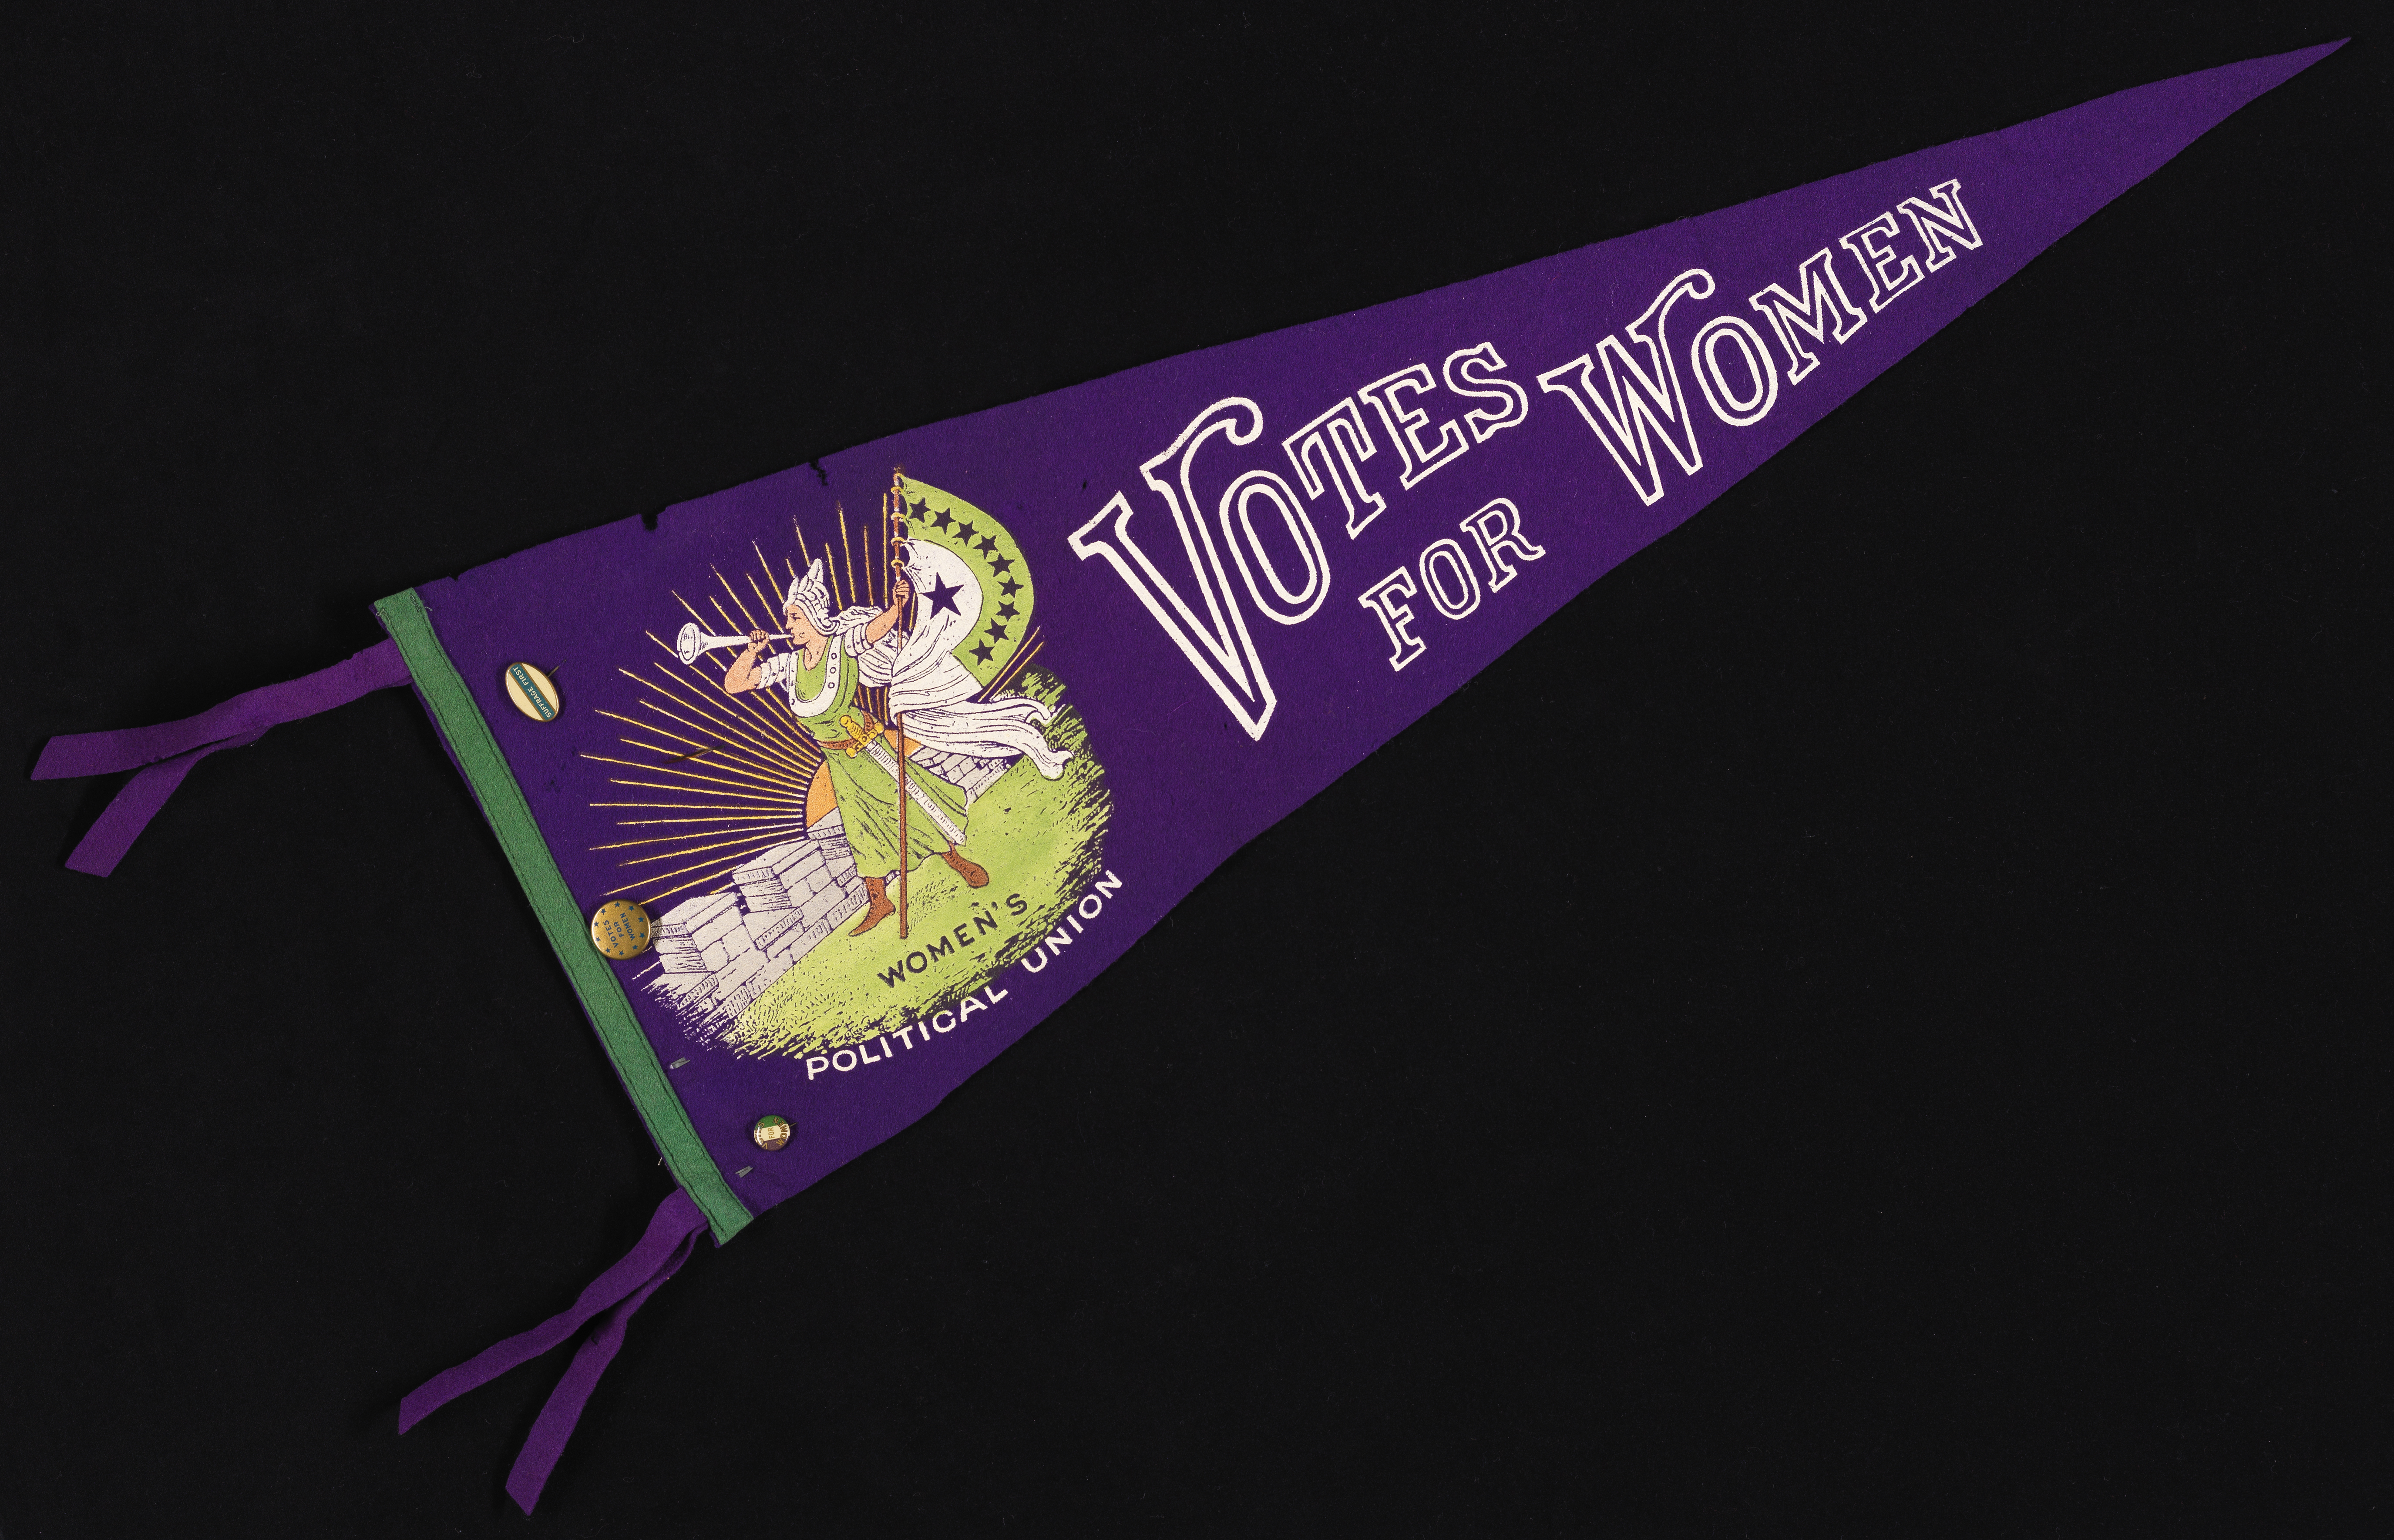 Pendentif violet avec "Votes pour les femmes" en texte blanc, et un dessin d'une femme viking-eqsue soufflant une trompette